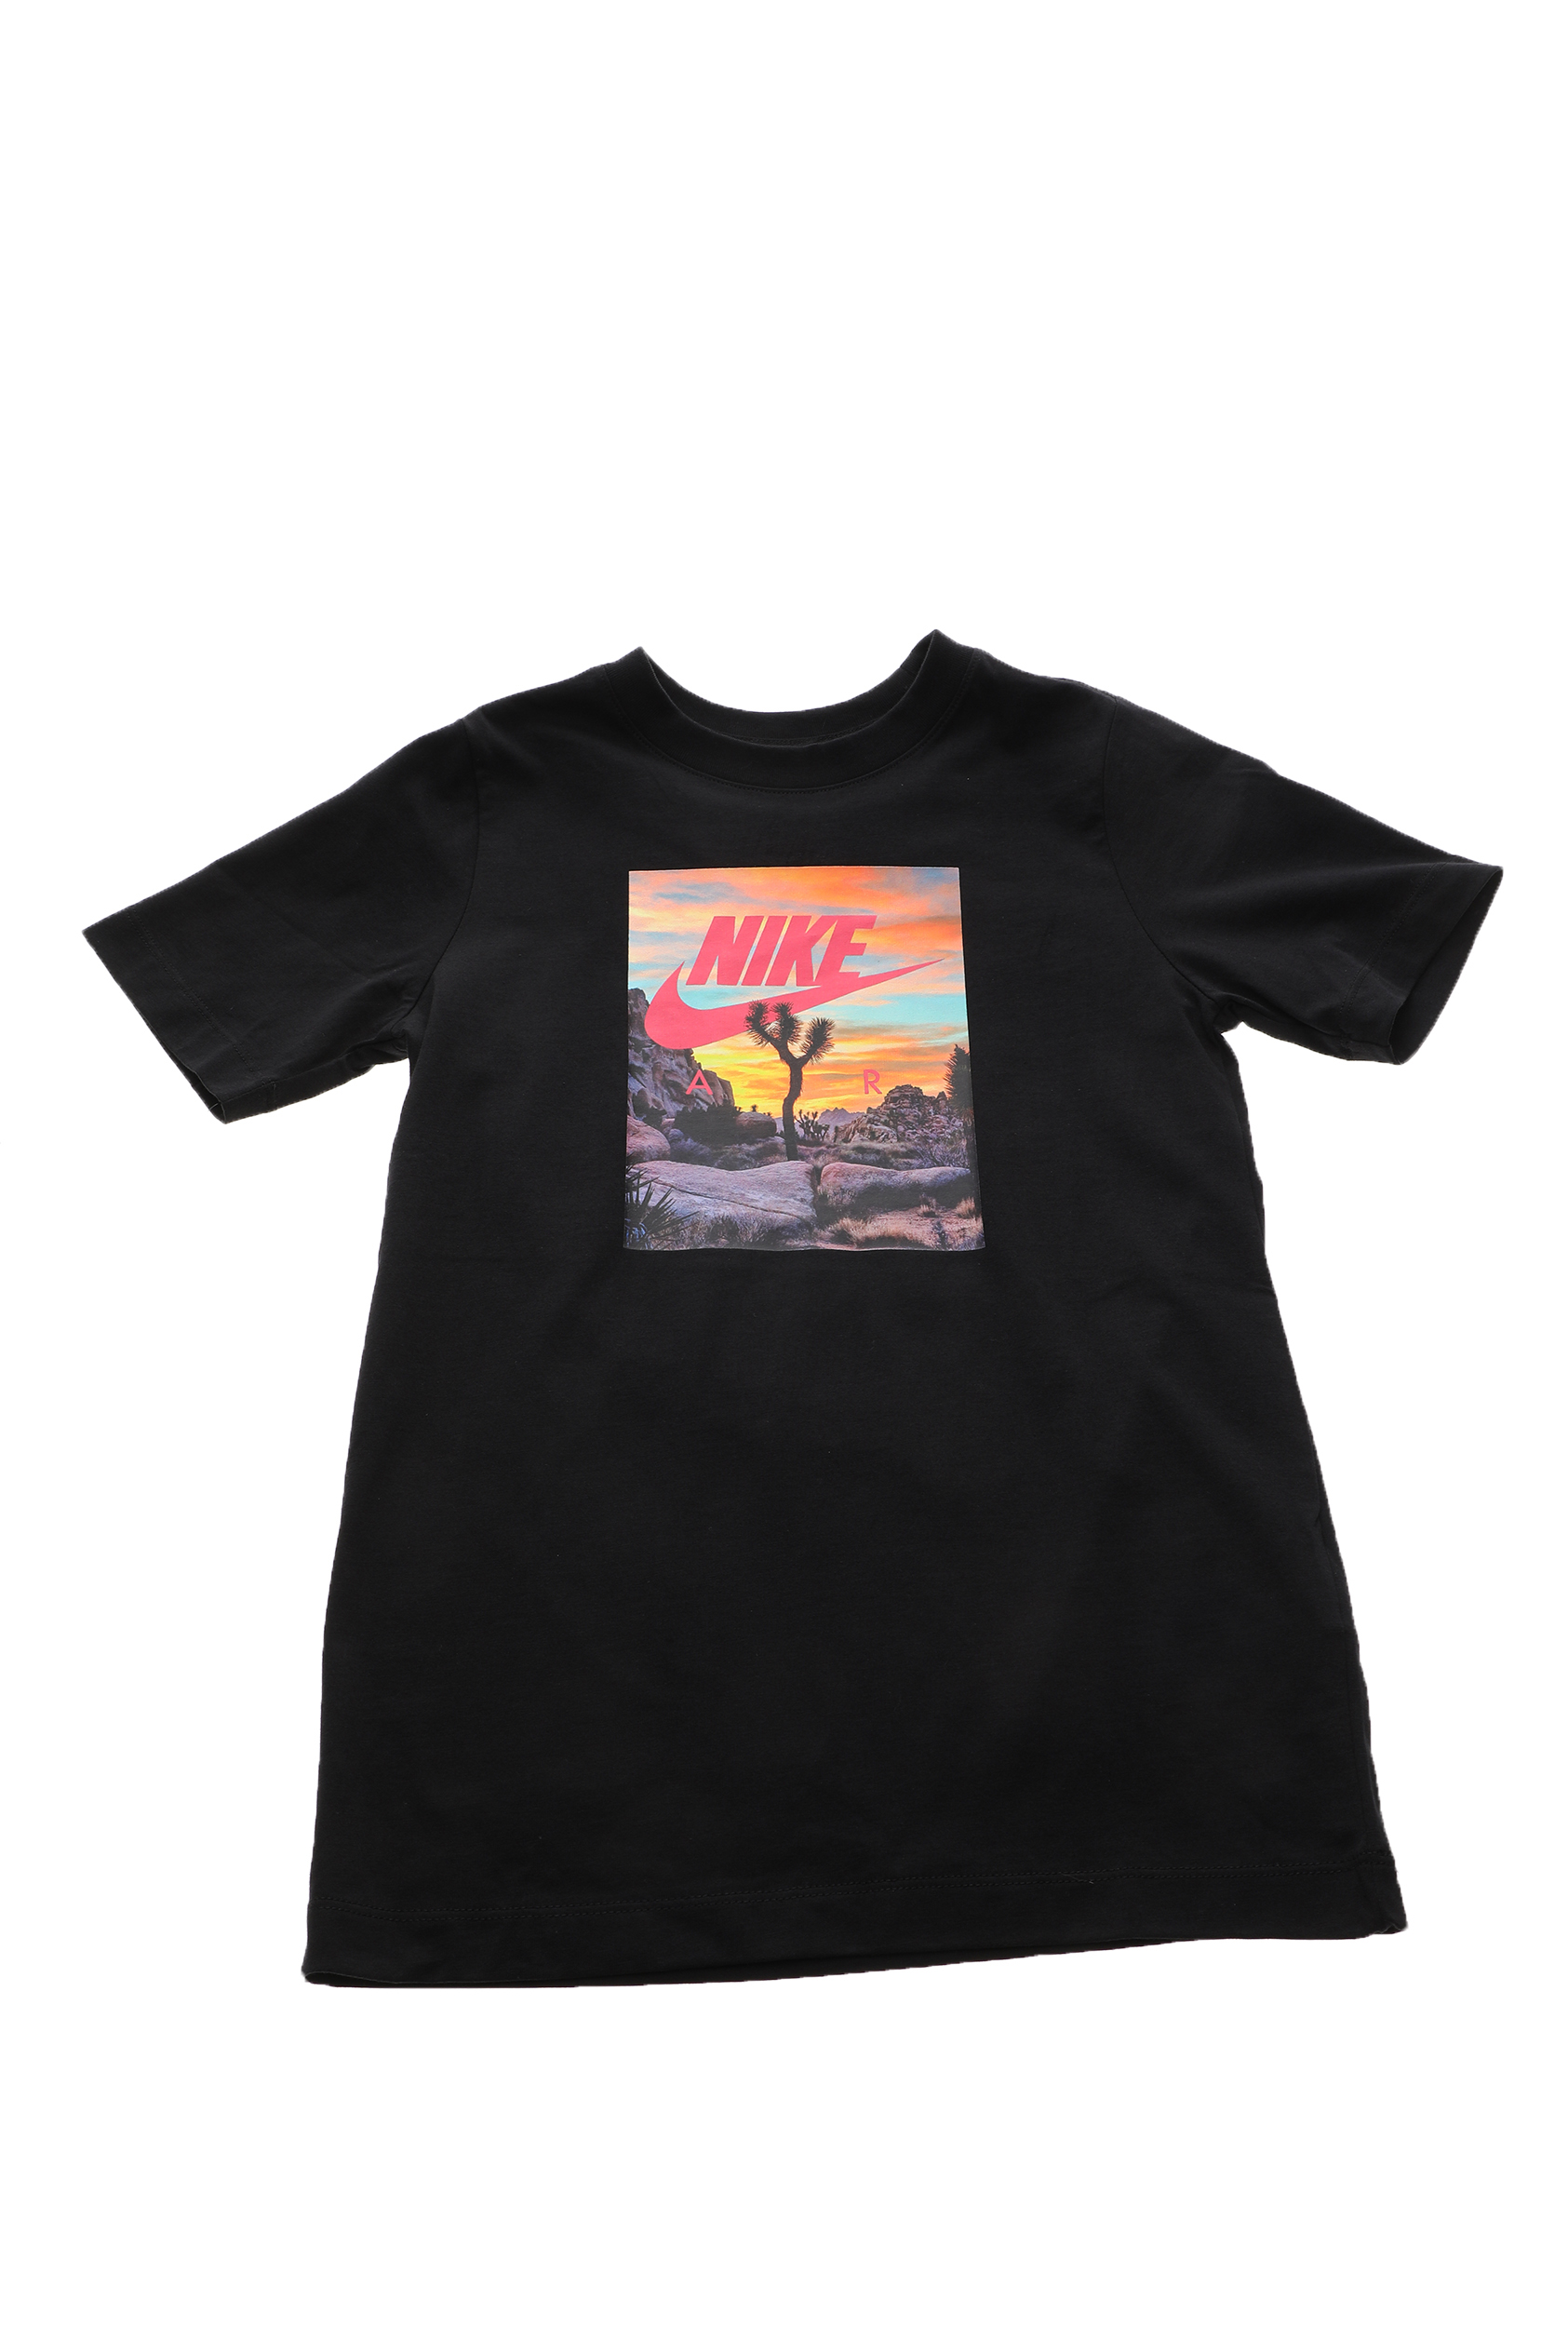 Παιδικά/Boys/Ρούχα/Αθλητικά NIKE - Παιδικό t-shirt ΝΙΚΕ NSW TEE AIR PHOTO SU20 μαύρο